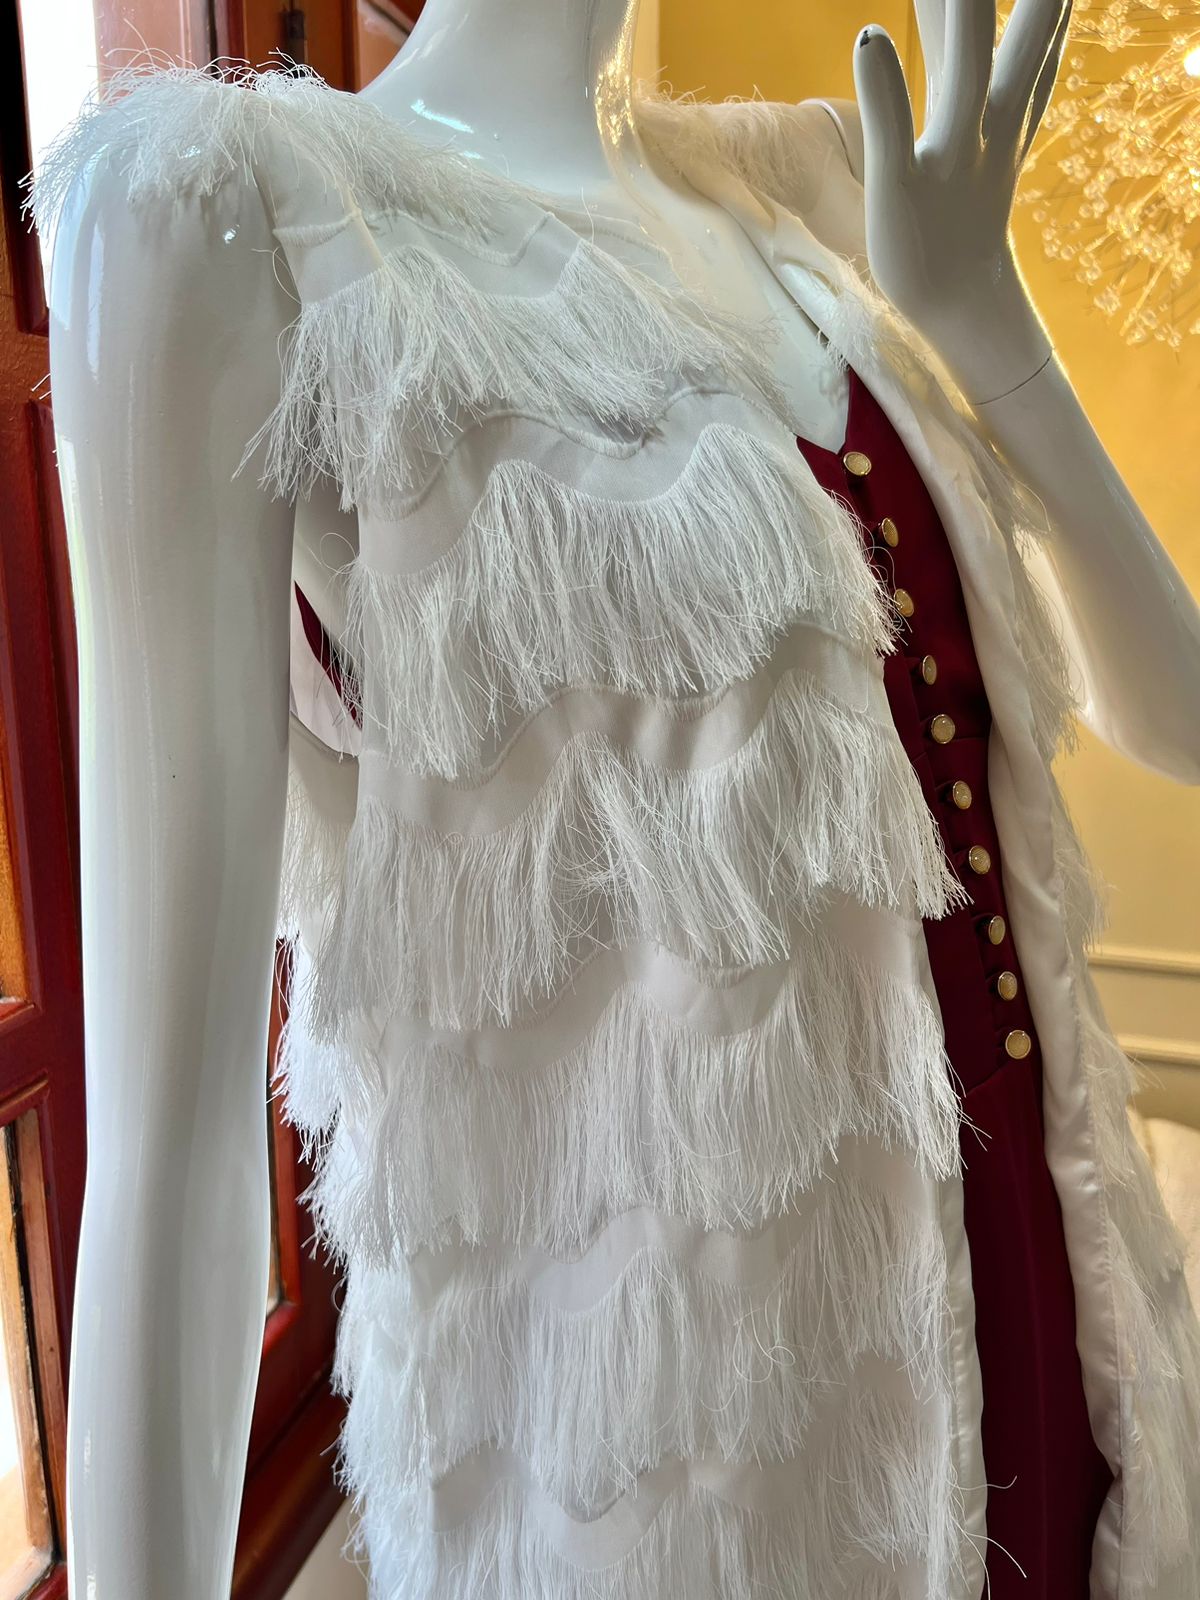 Maniquí luciendo un elegante chaleco blanco con flecos en capas, perfecto para añadir un toque de estilo bohemio y sofisticado a cualquier conjunto.